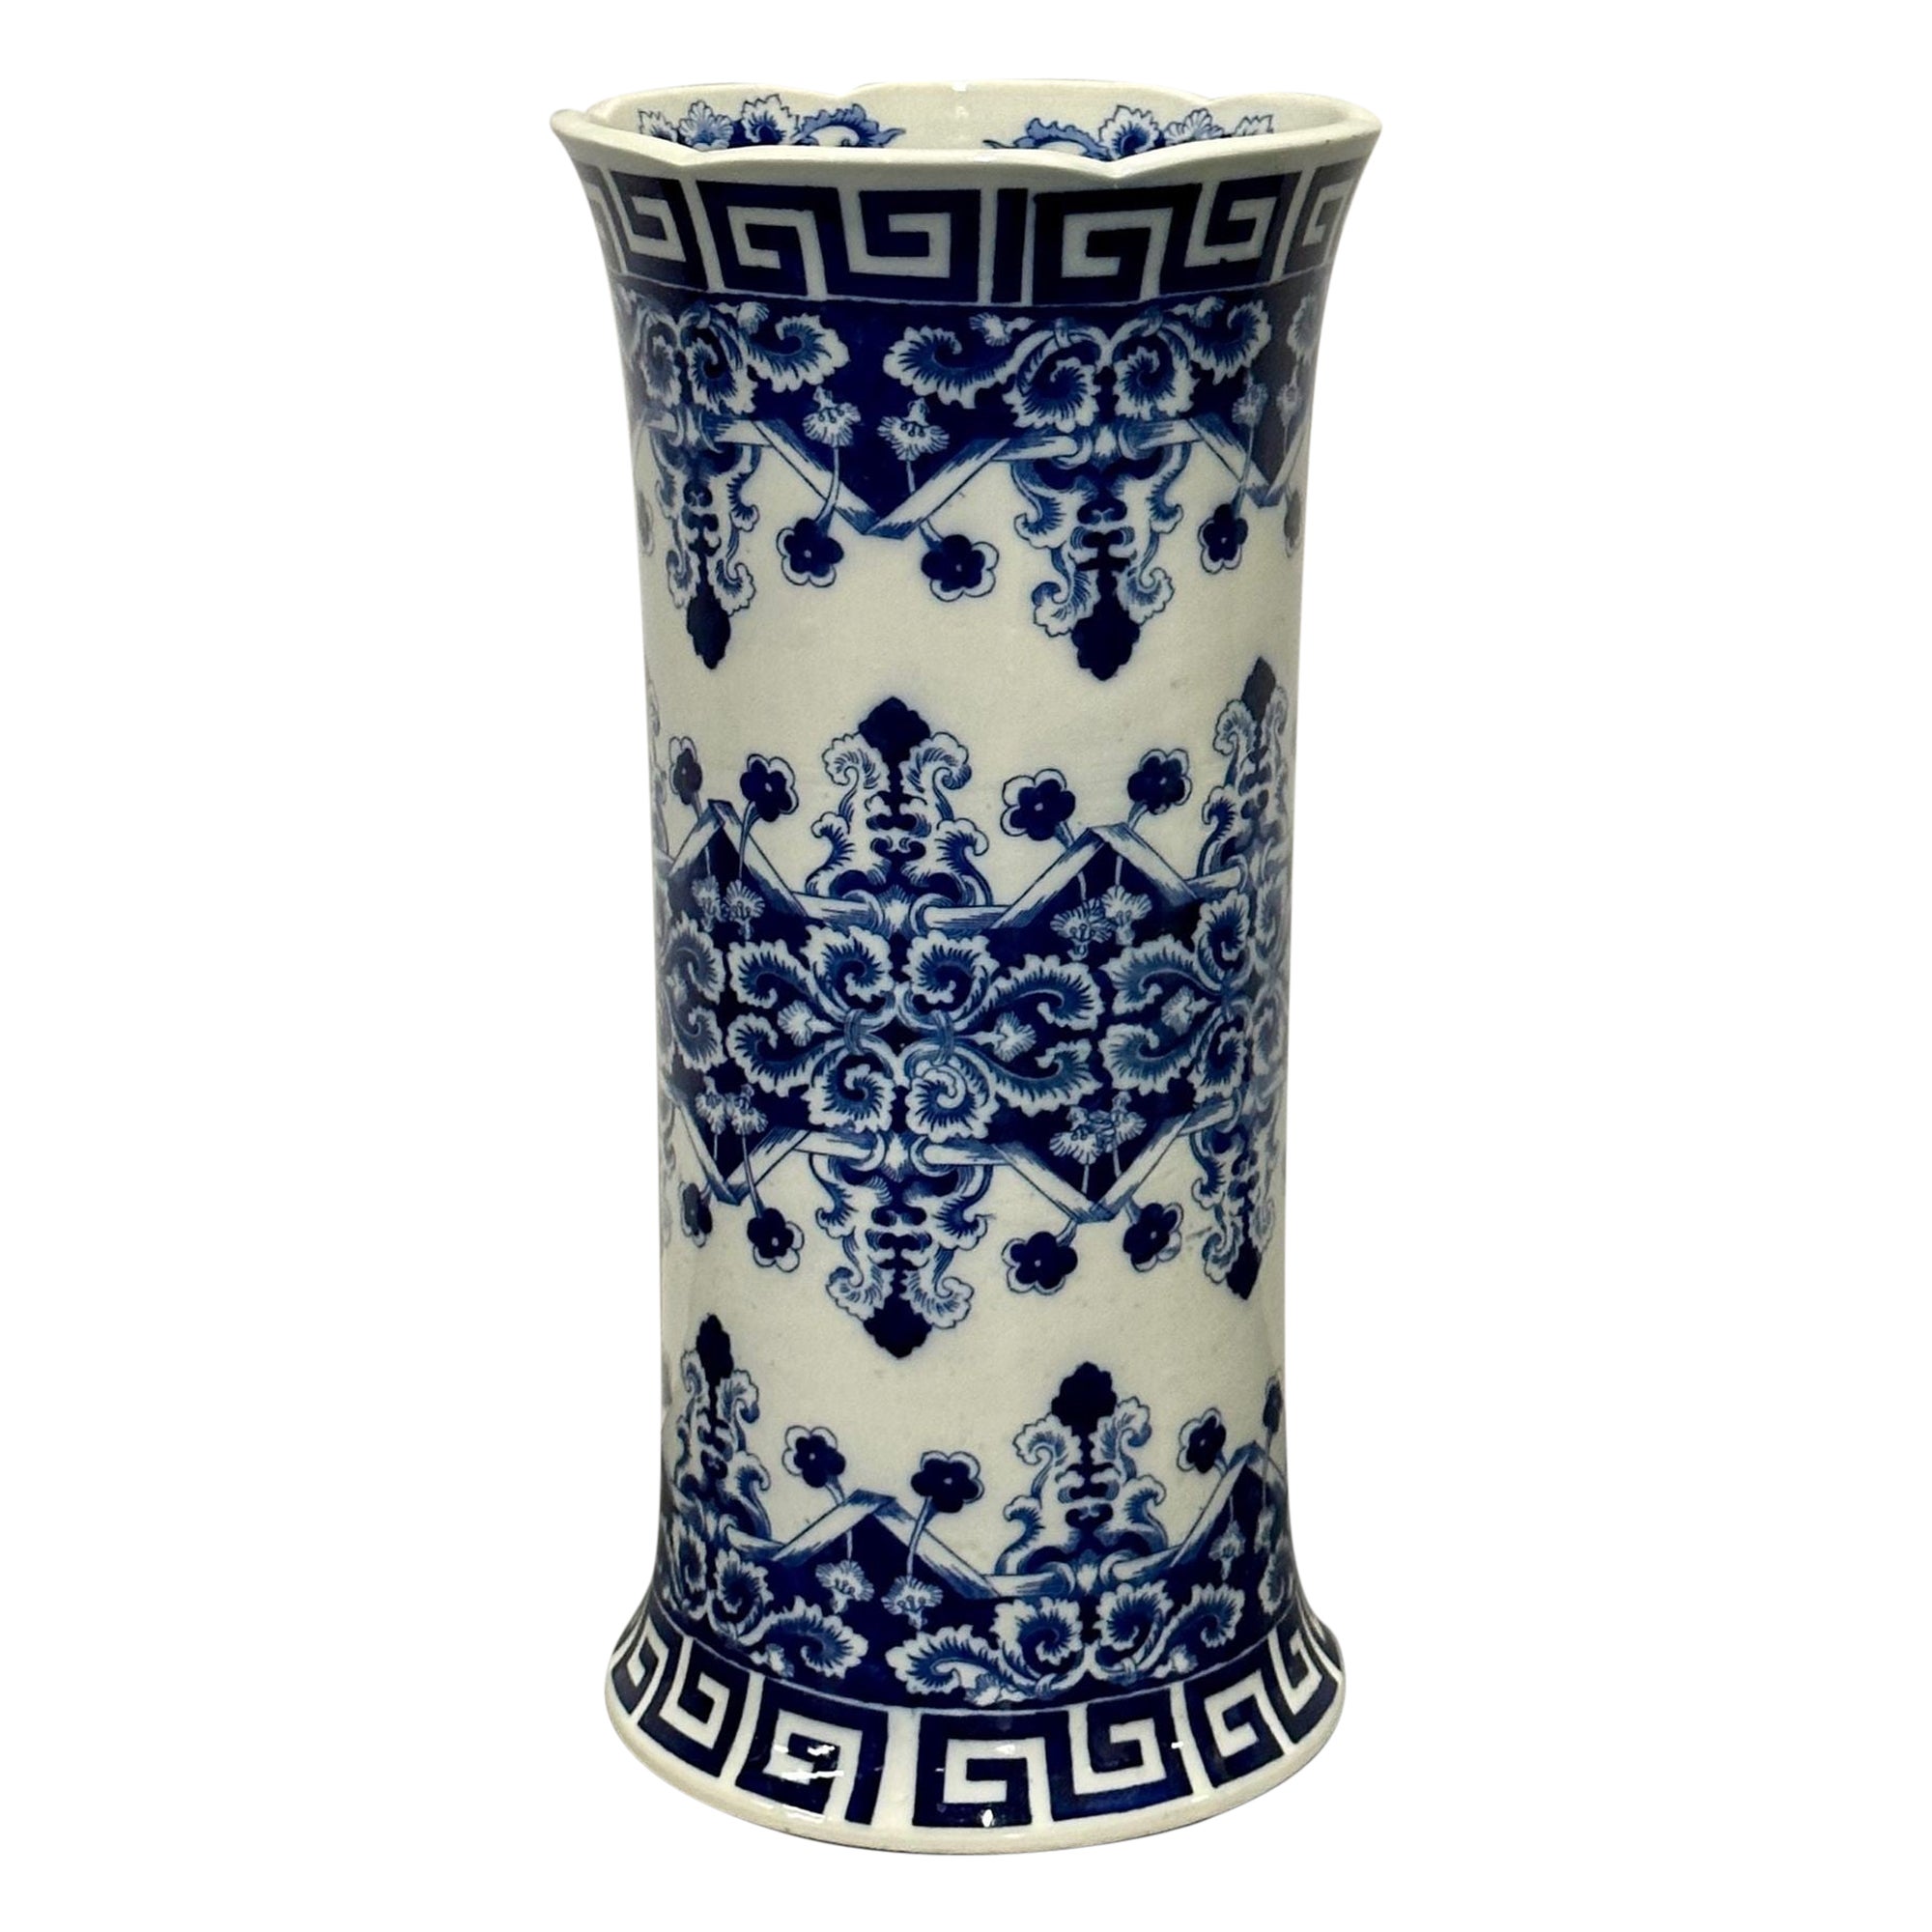 Orientalisches Porzellan Flow Blau Weiß Umbrella Stand, Große Vase, Floral dekoriert